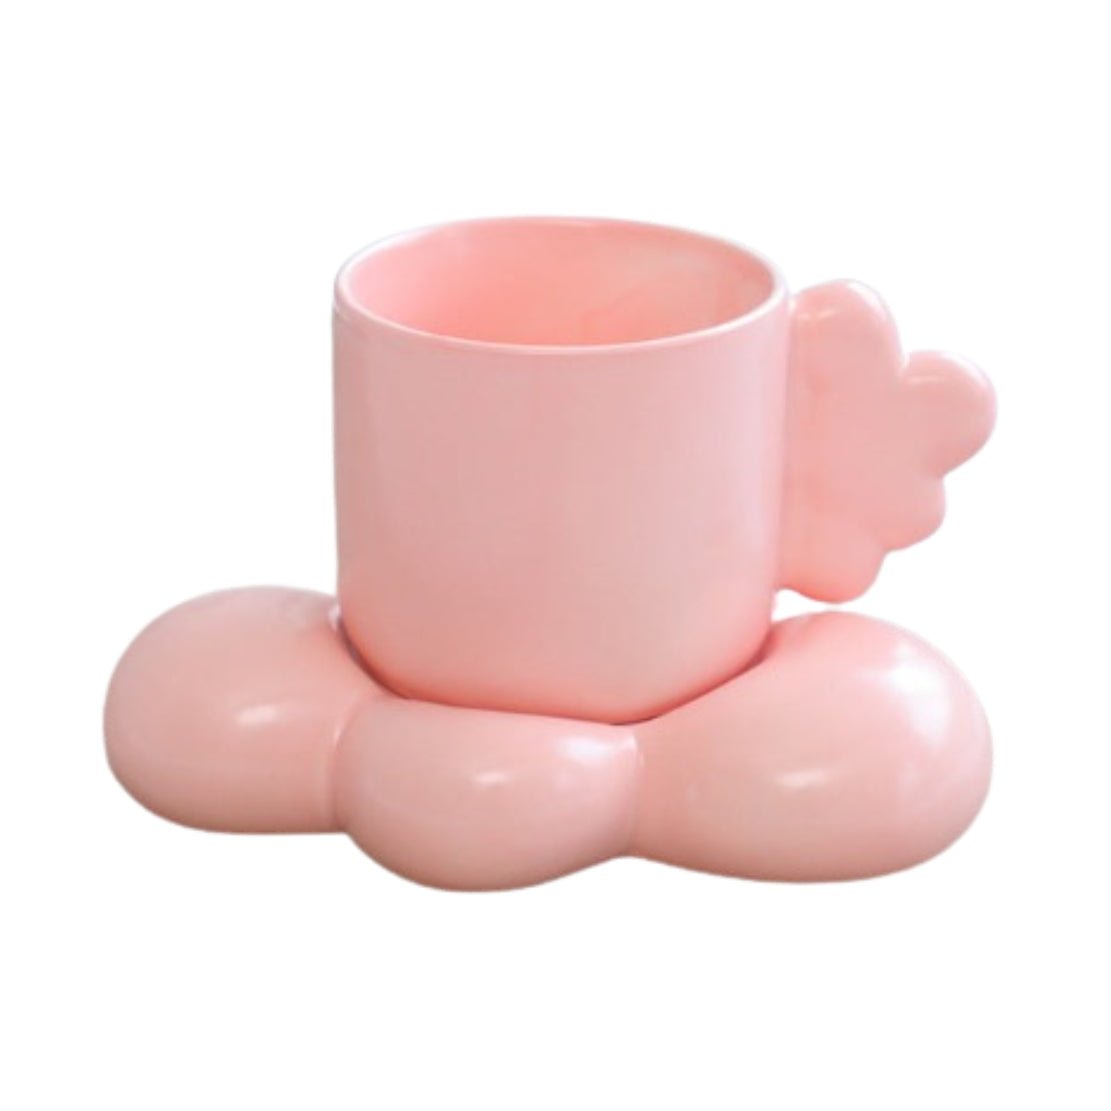 Pink ceramic mug with cloud handle and saucer